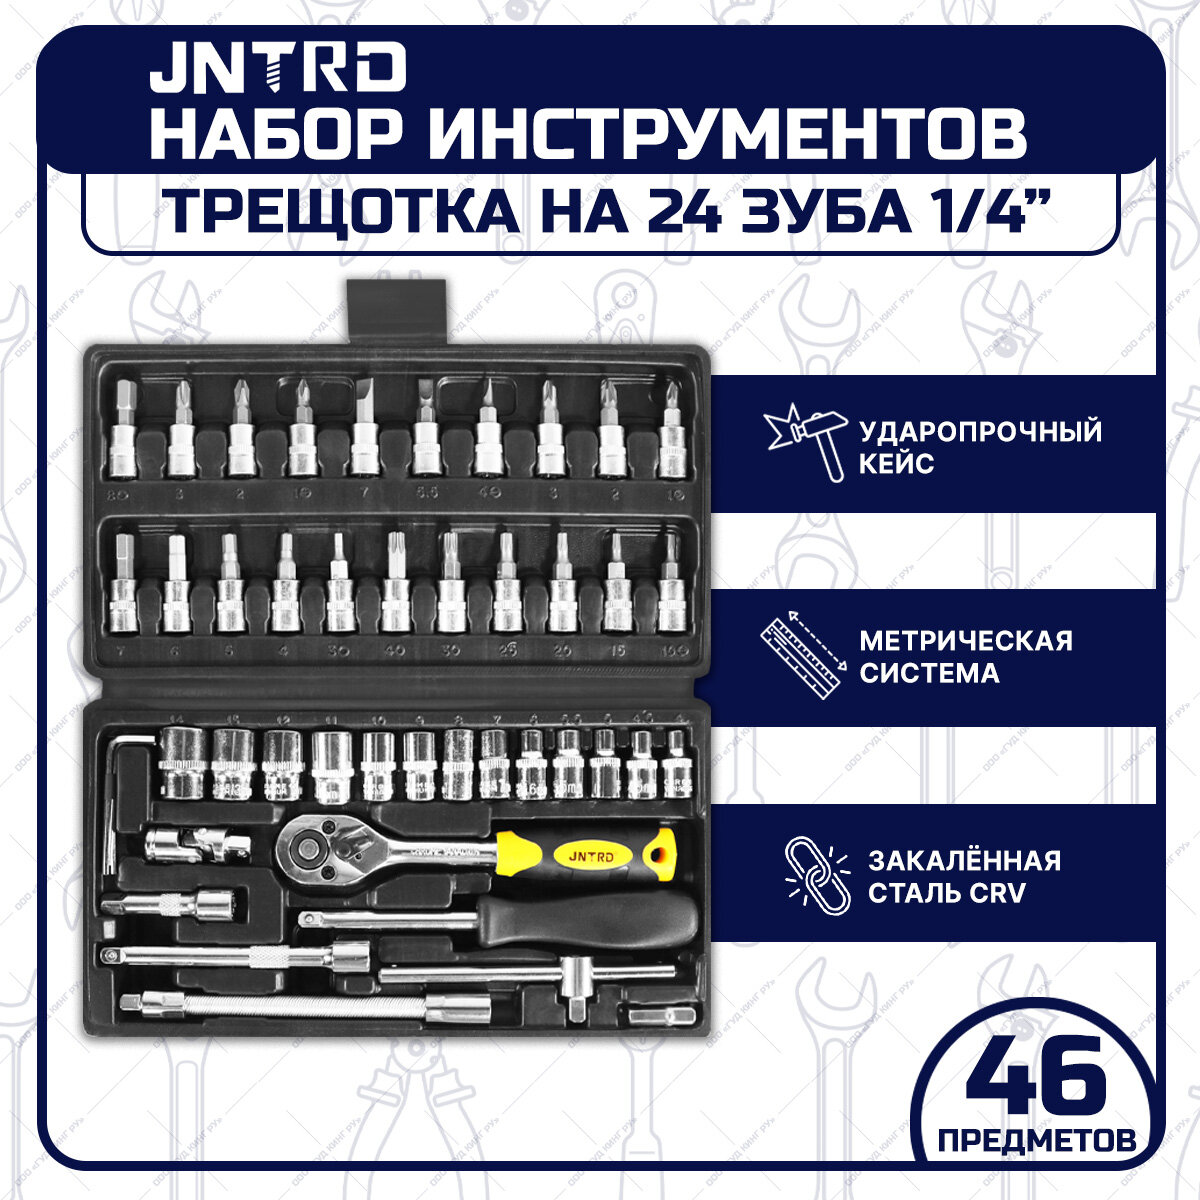 Набор инструментов JNRTD J-10046 46 предметов трещотка 1/4", tools для дома, для автомобиля